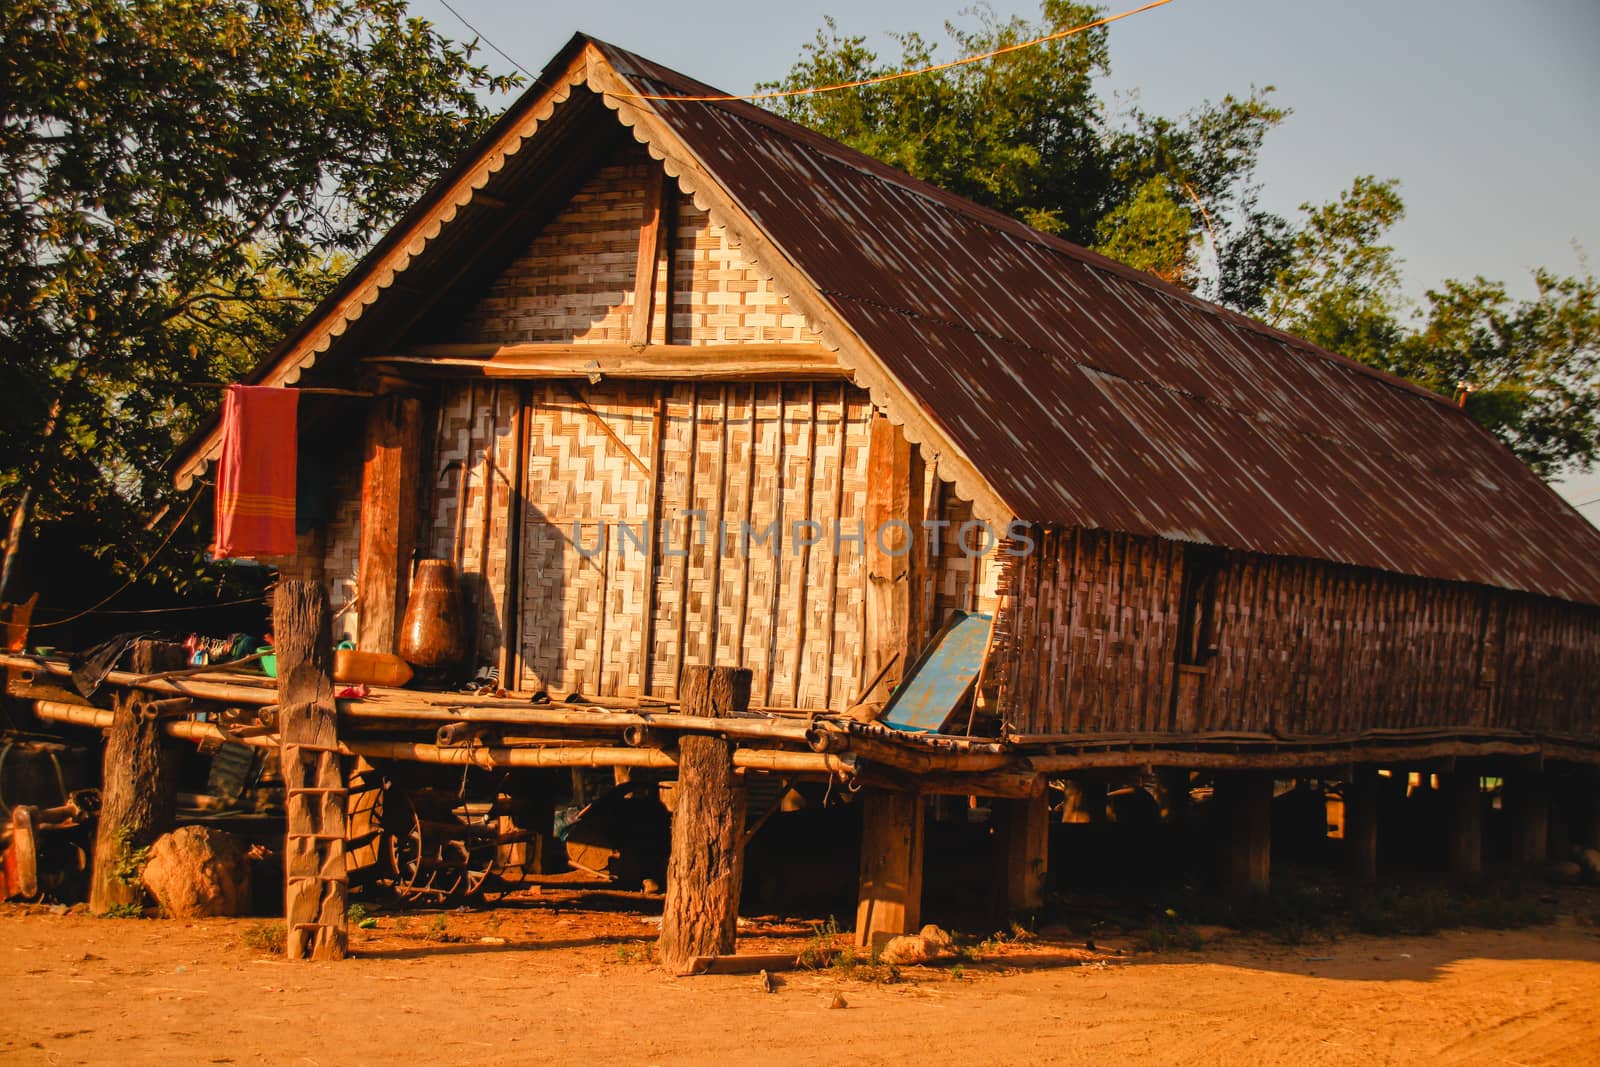 Buon Don Village in Dak Lak, Vietnam by Sonnet15